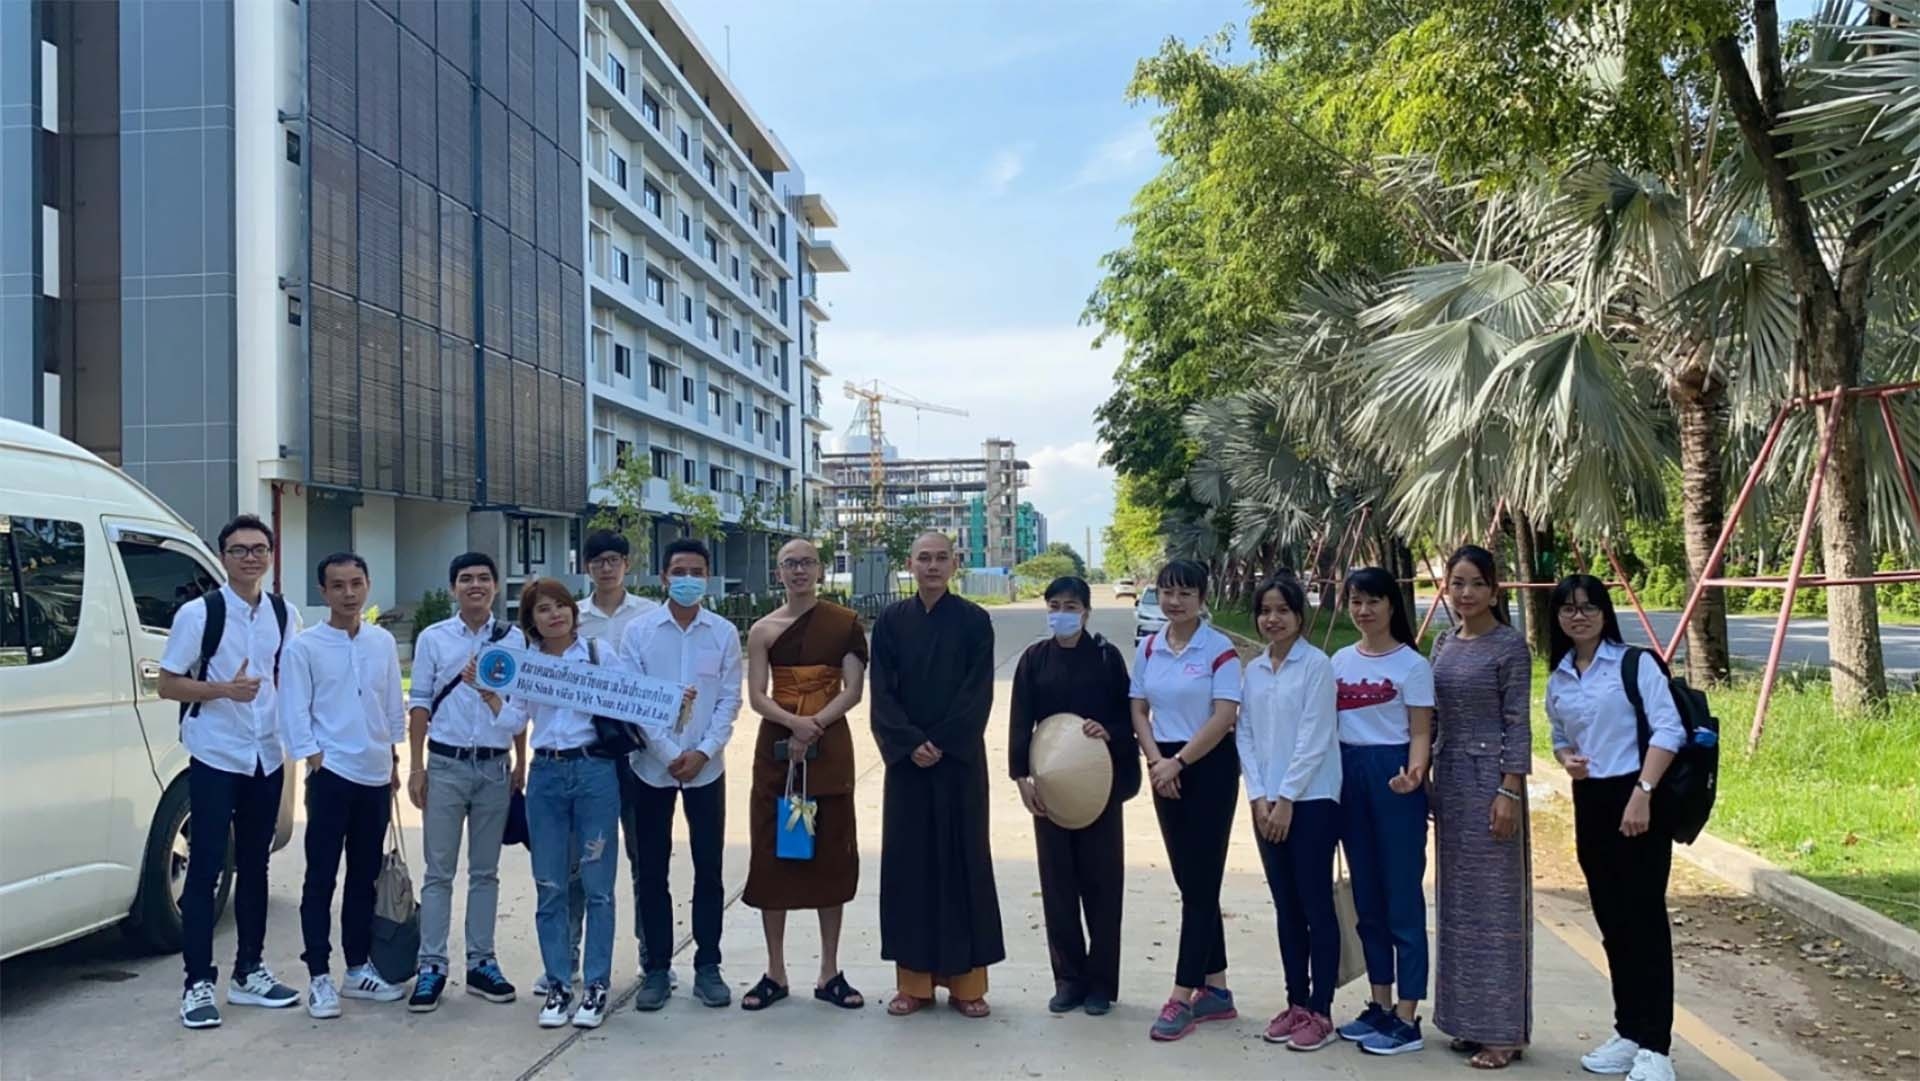 Hoạt động giao lưu của các sinh viên Việt Nam tại Thái Lan.